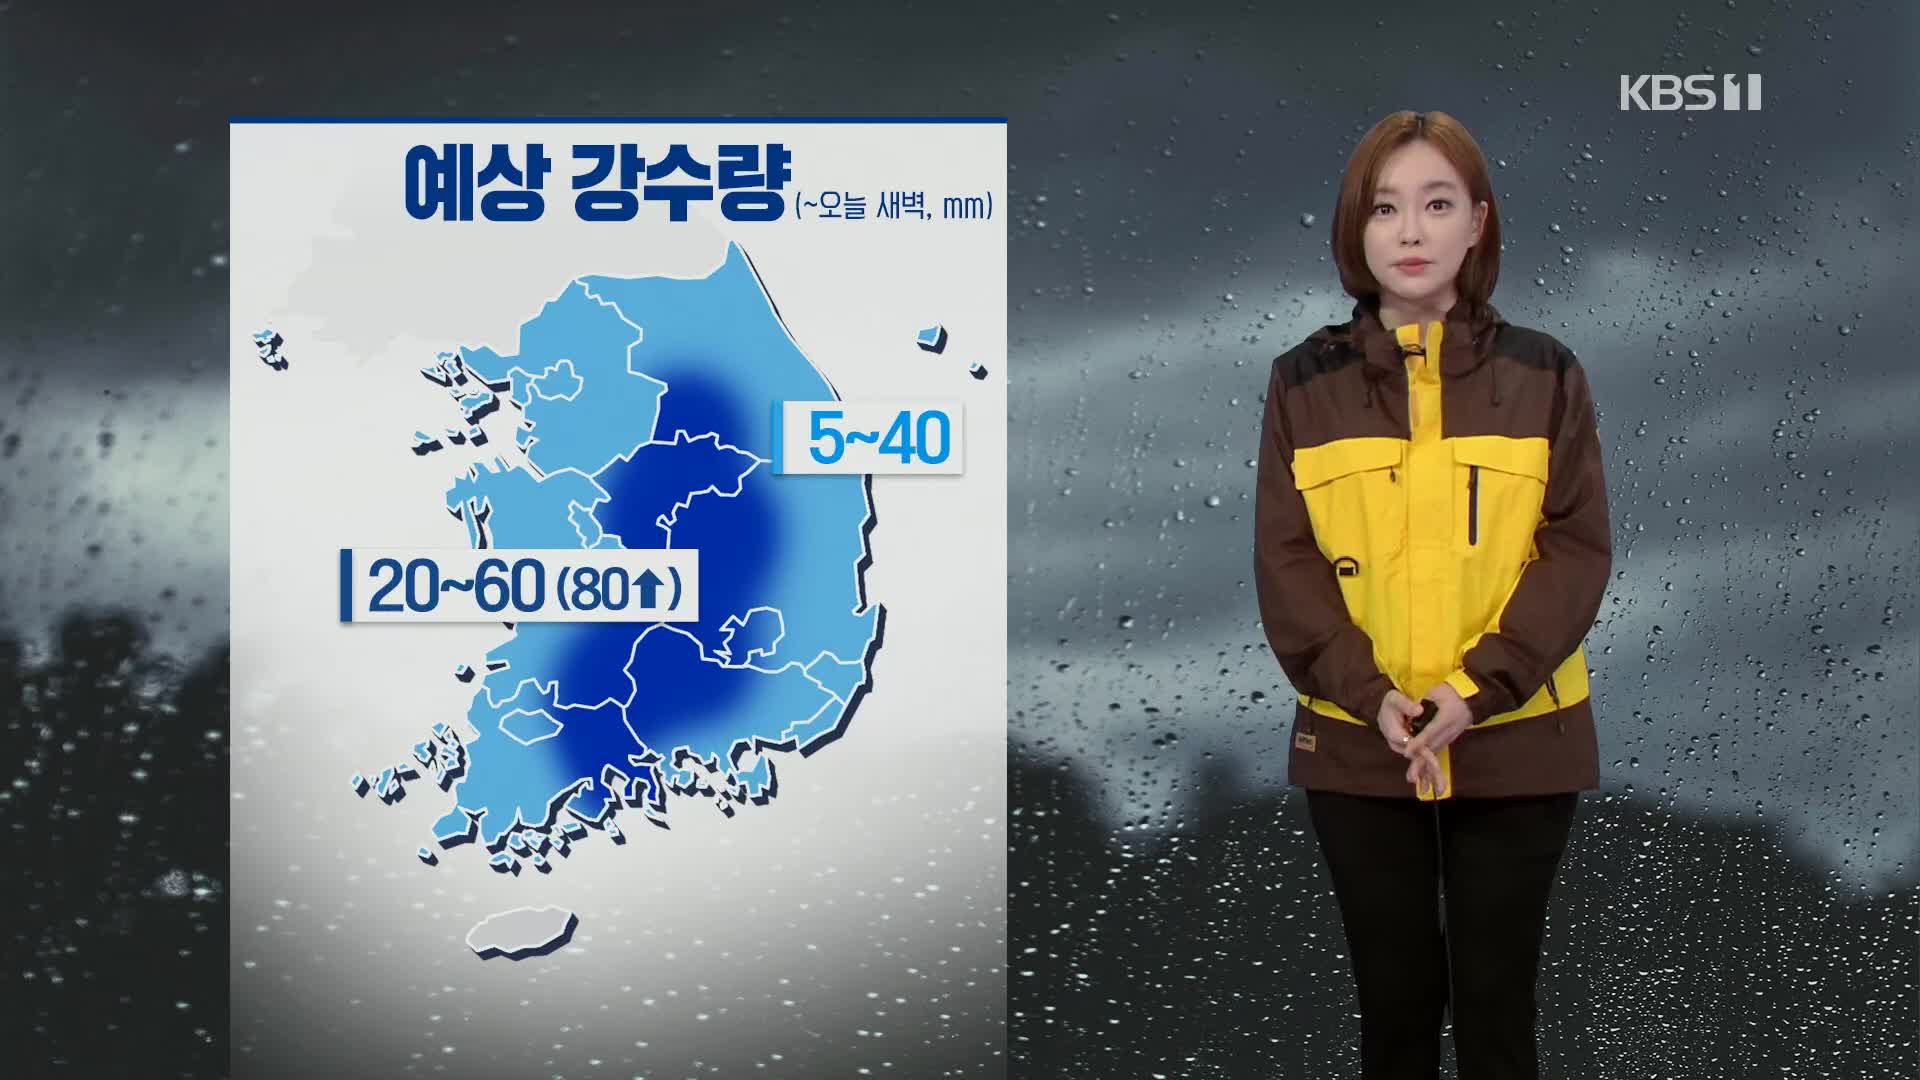 [뉴스라인 날씨] 밤사이 강원 영서·충북·영남 등에 강한 빗줄기